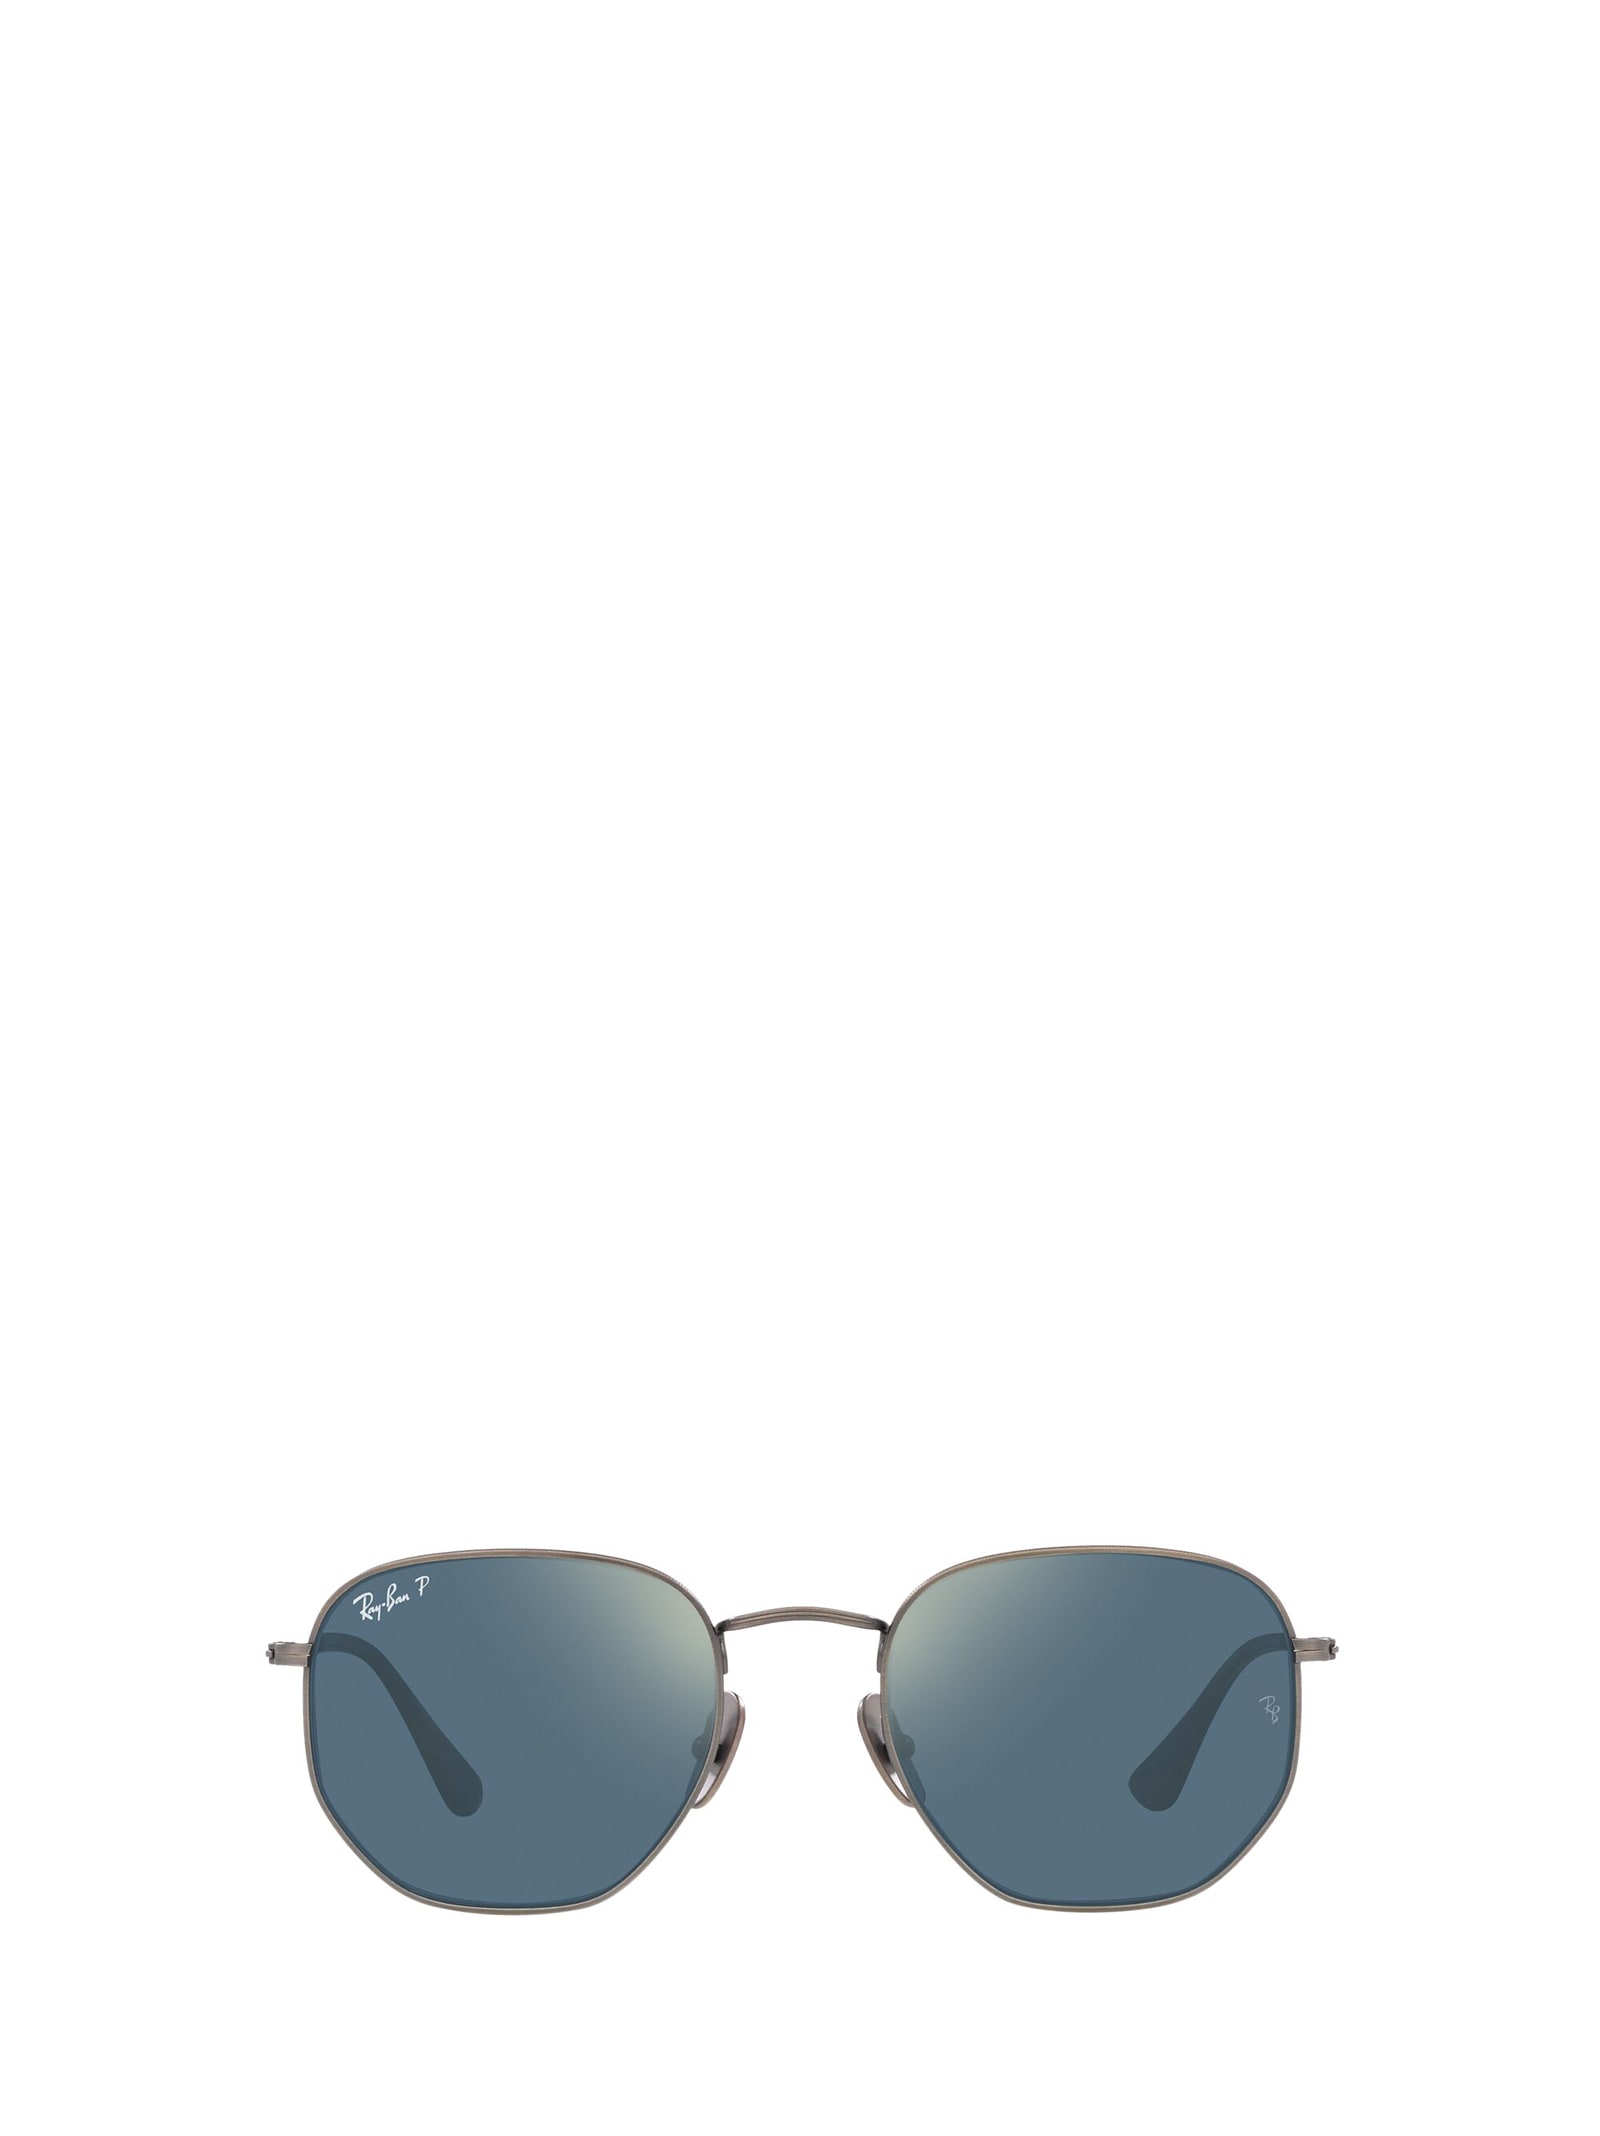 Ray-Ban Rb8148 Demigloss Gunmetal Sunglasses